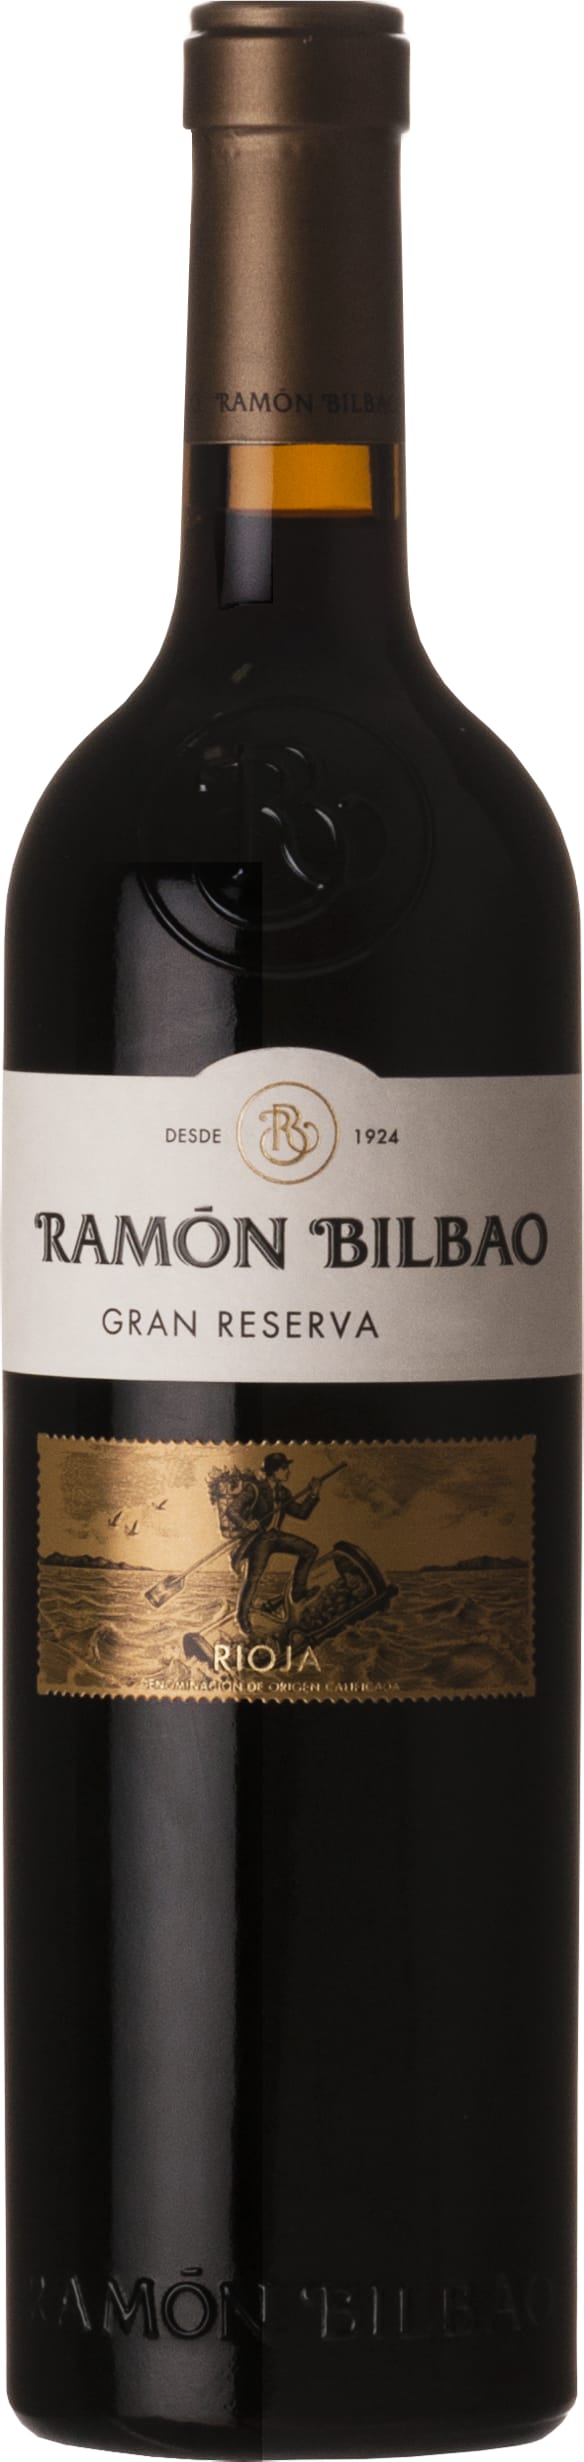 Ramon Bilbao Rioja Gran Reserva 2015 6x75cl - Just Wines 